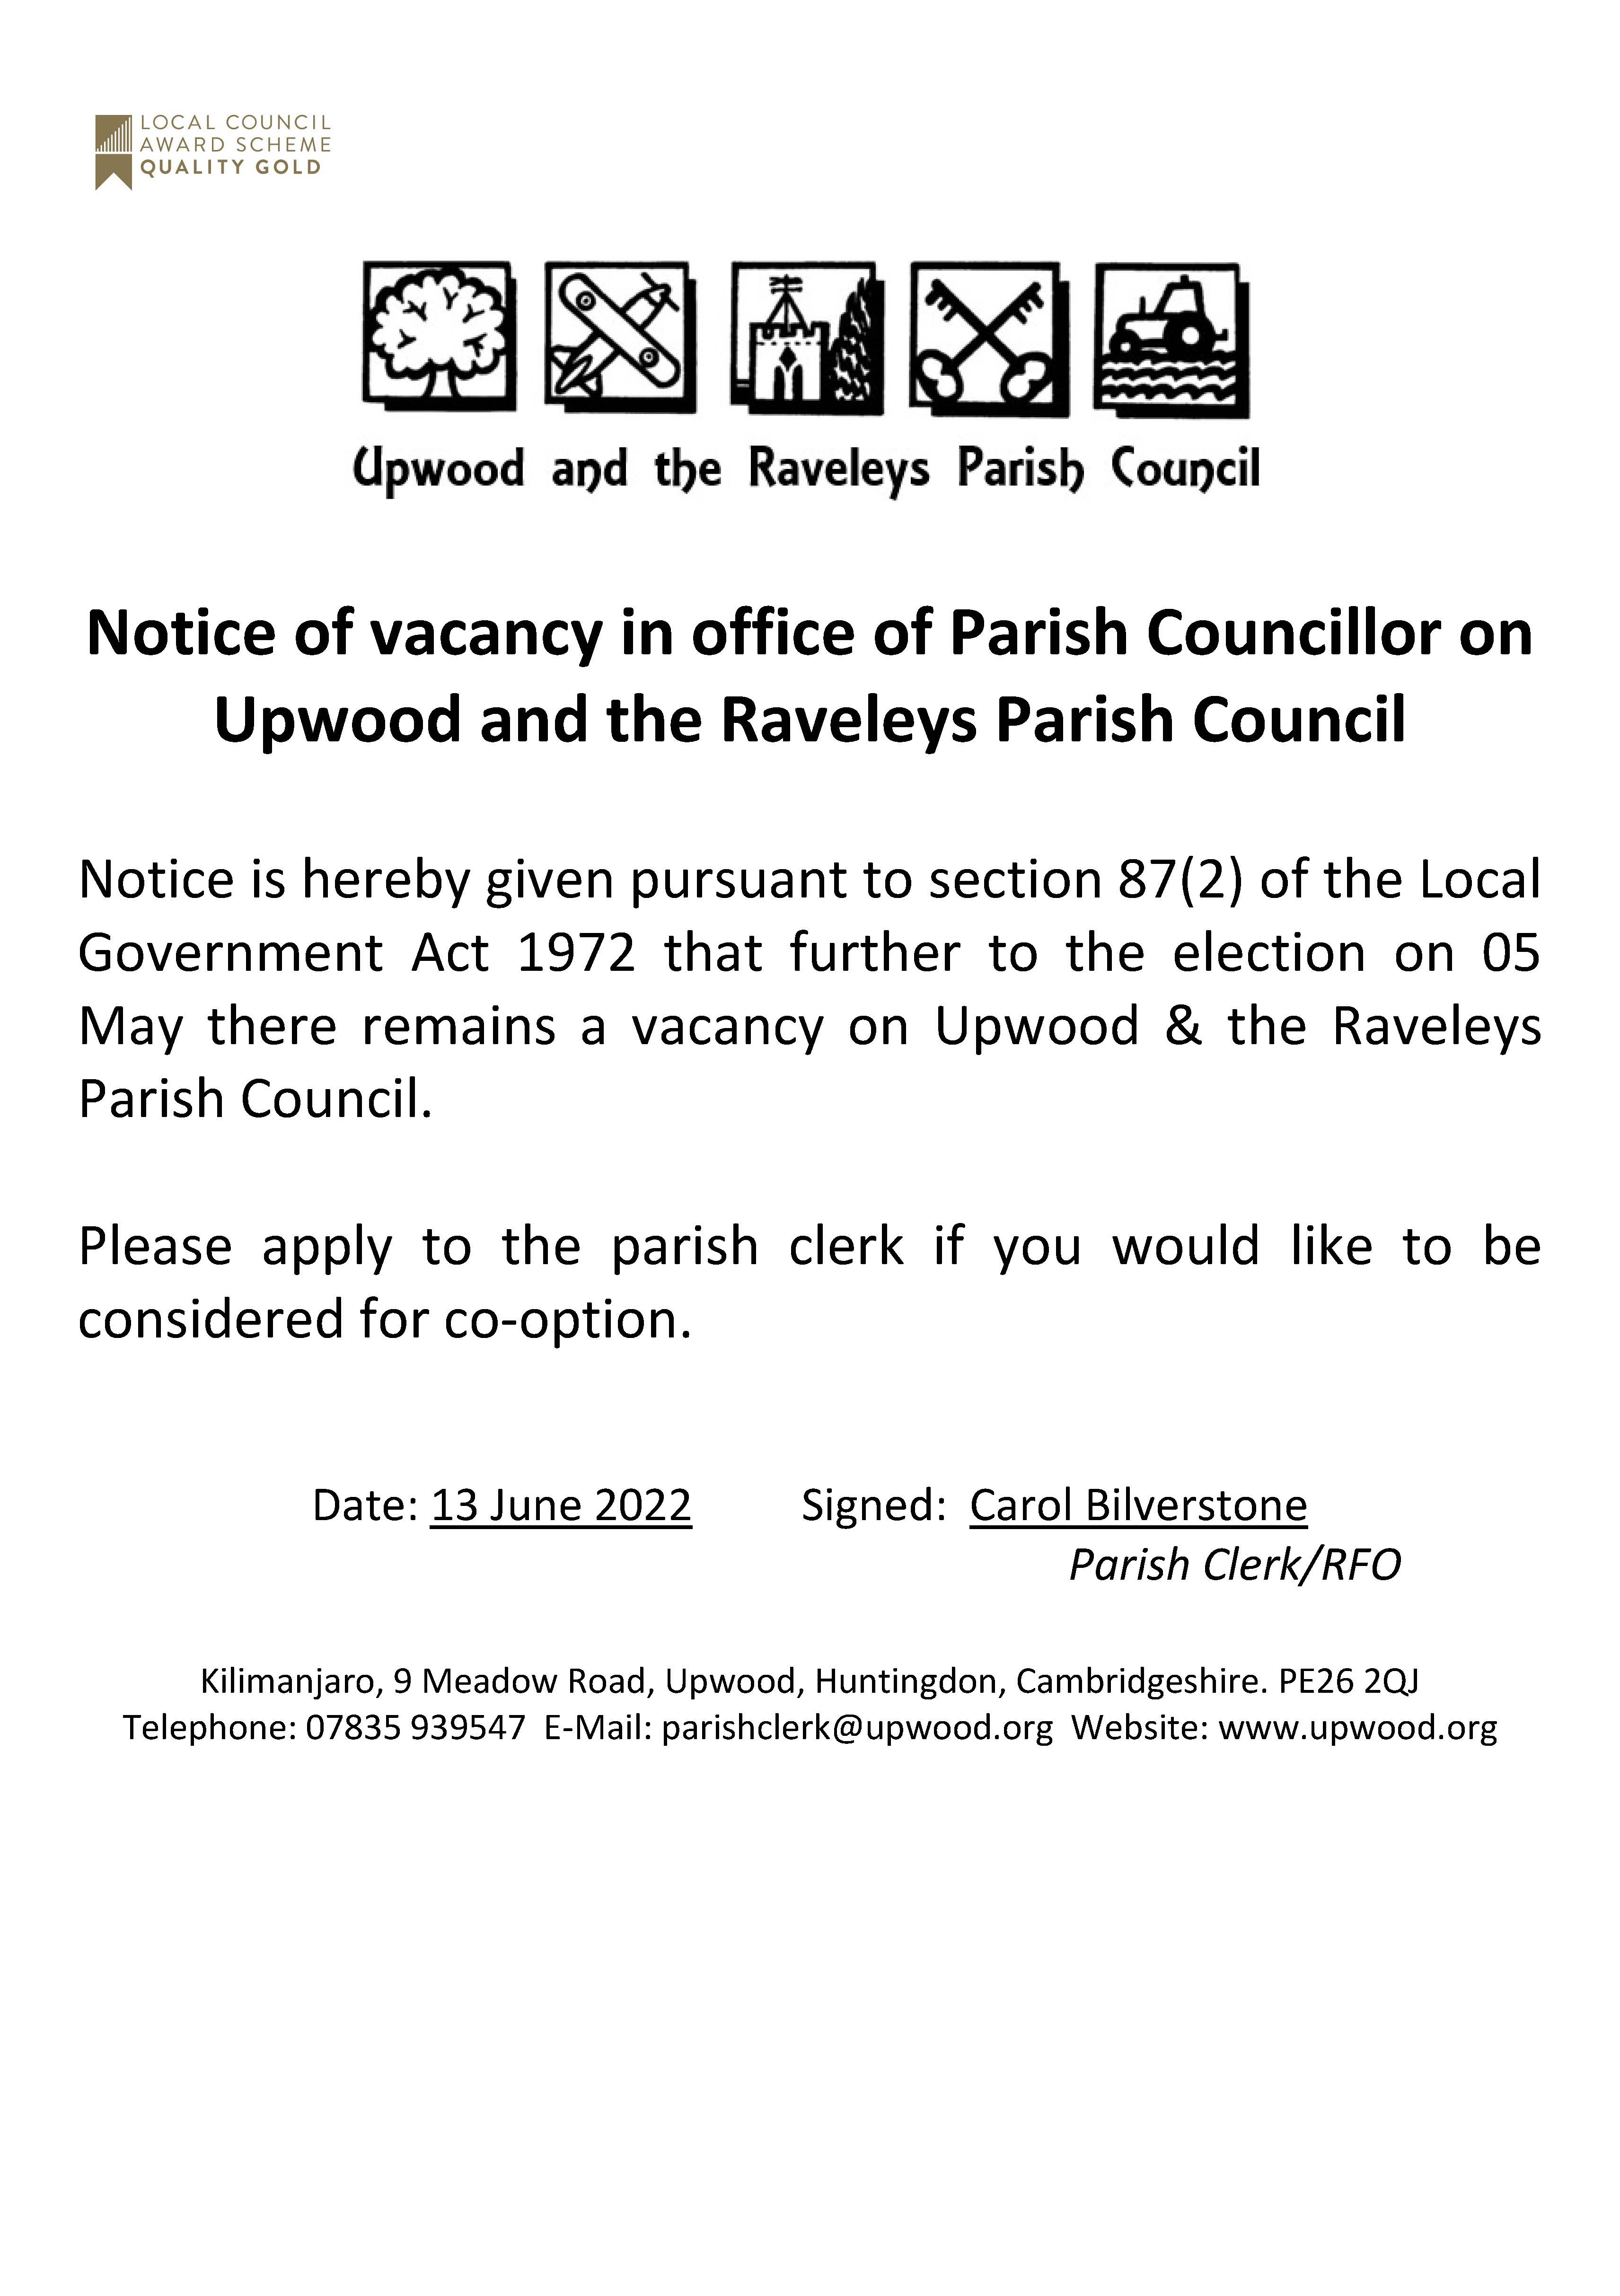 Notice of Vacancy for a Parish Councillor. 13.06.22